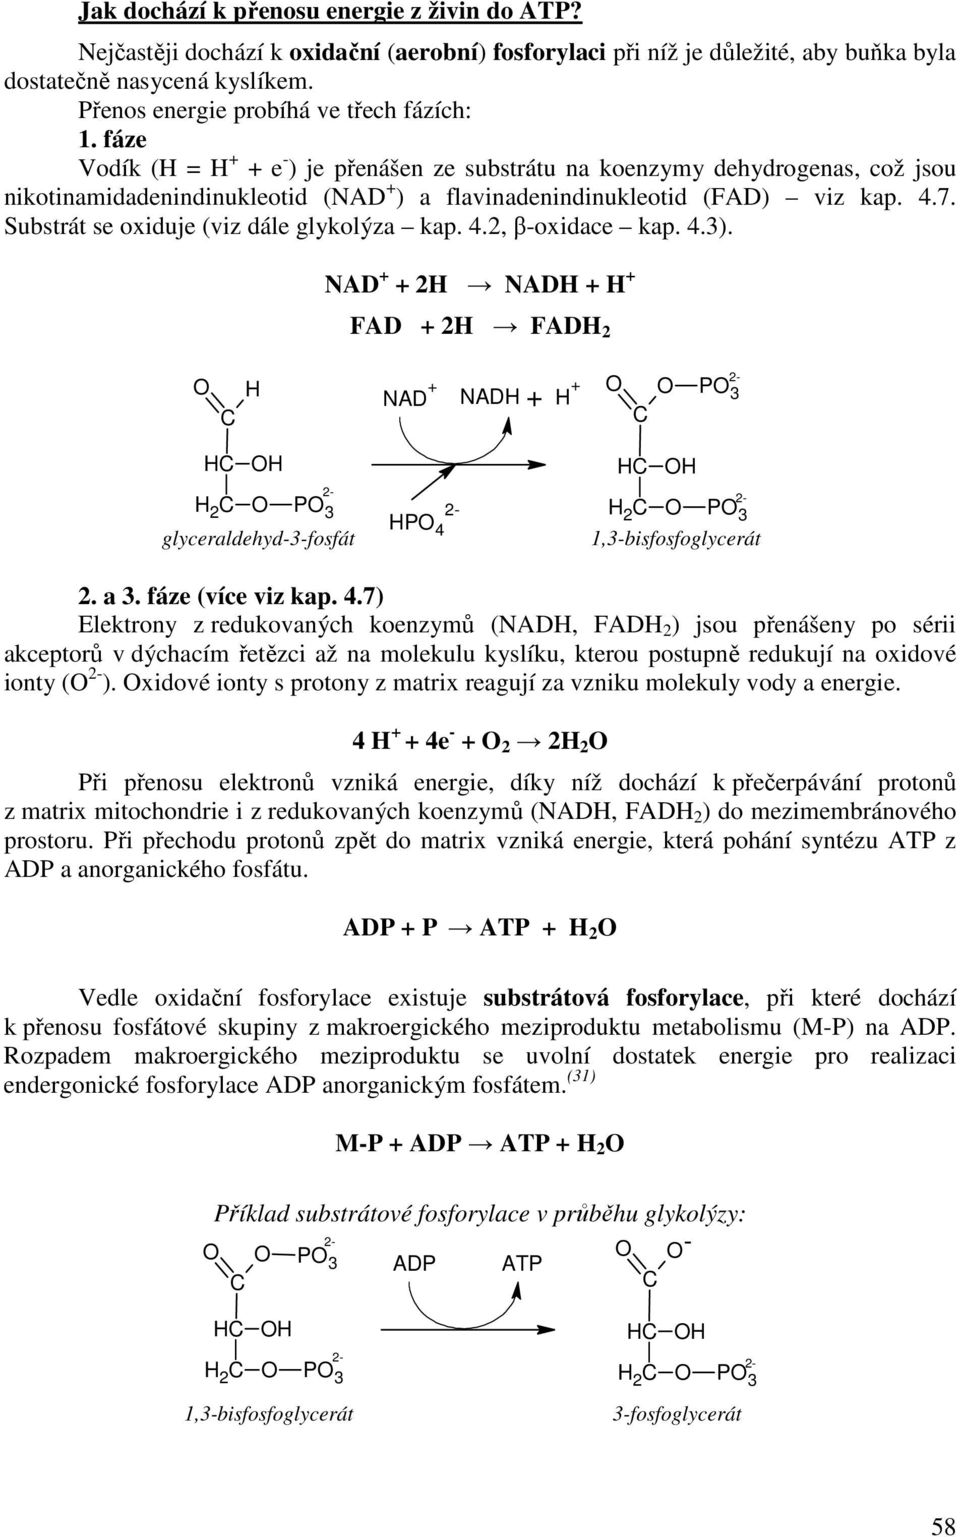 4.7. Substrát se oxiduje (viz dále glykolýza kap. 4.